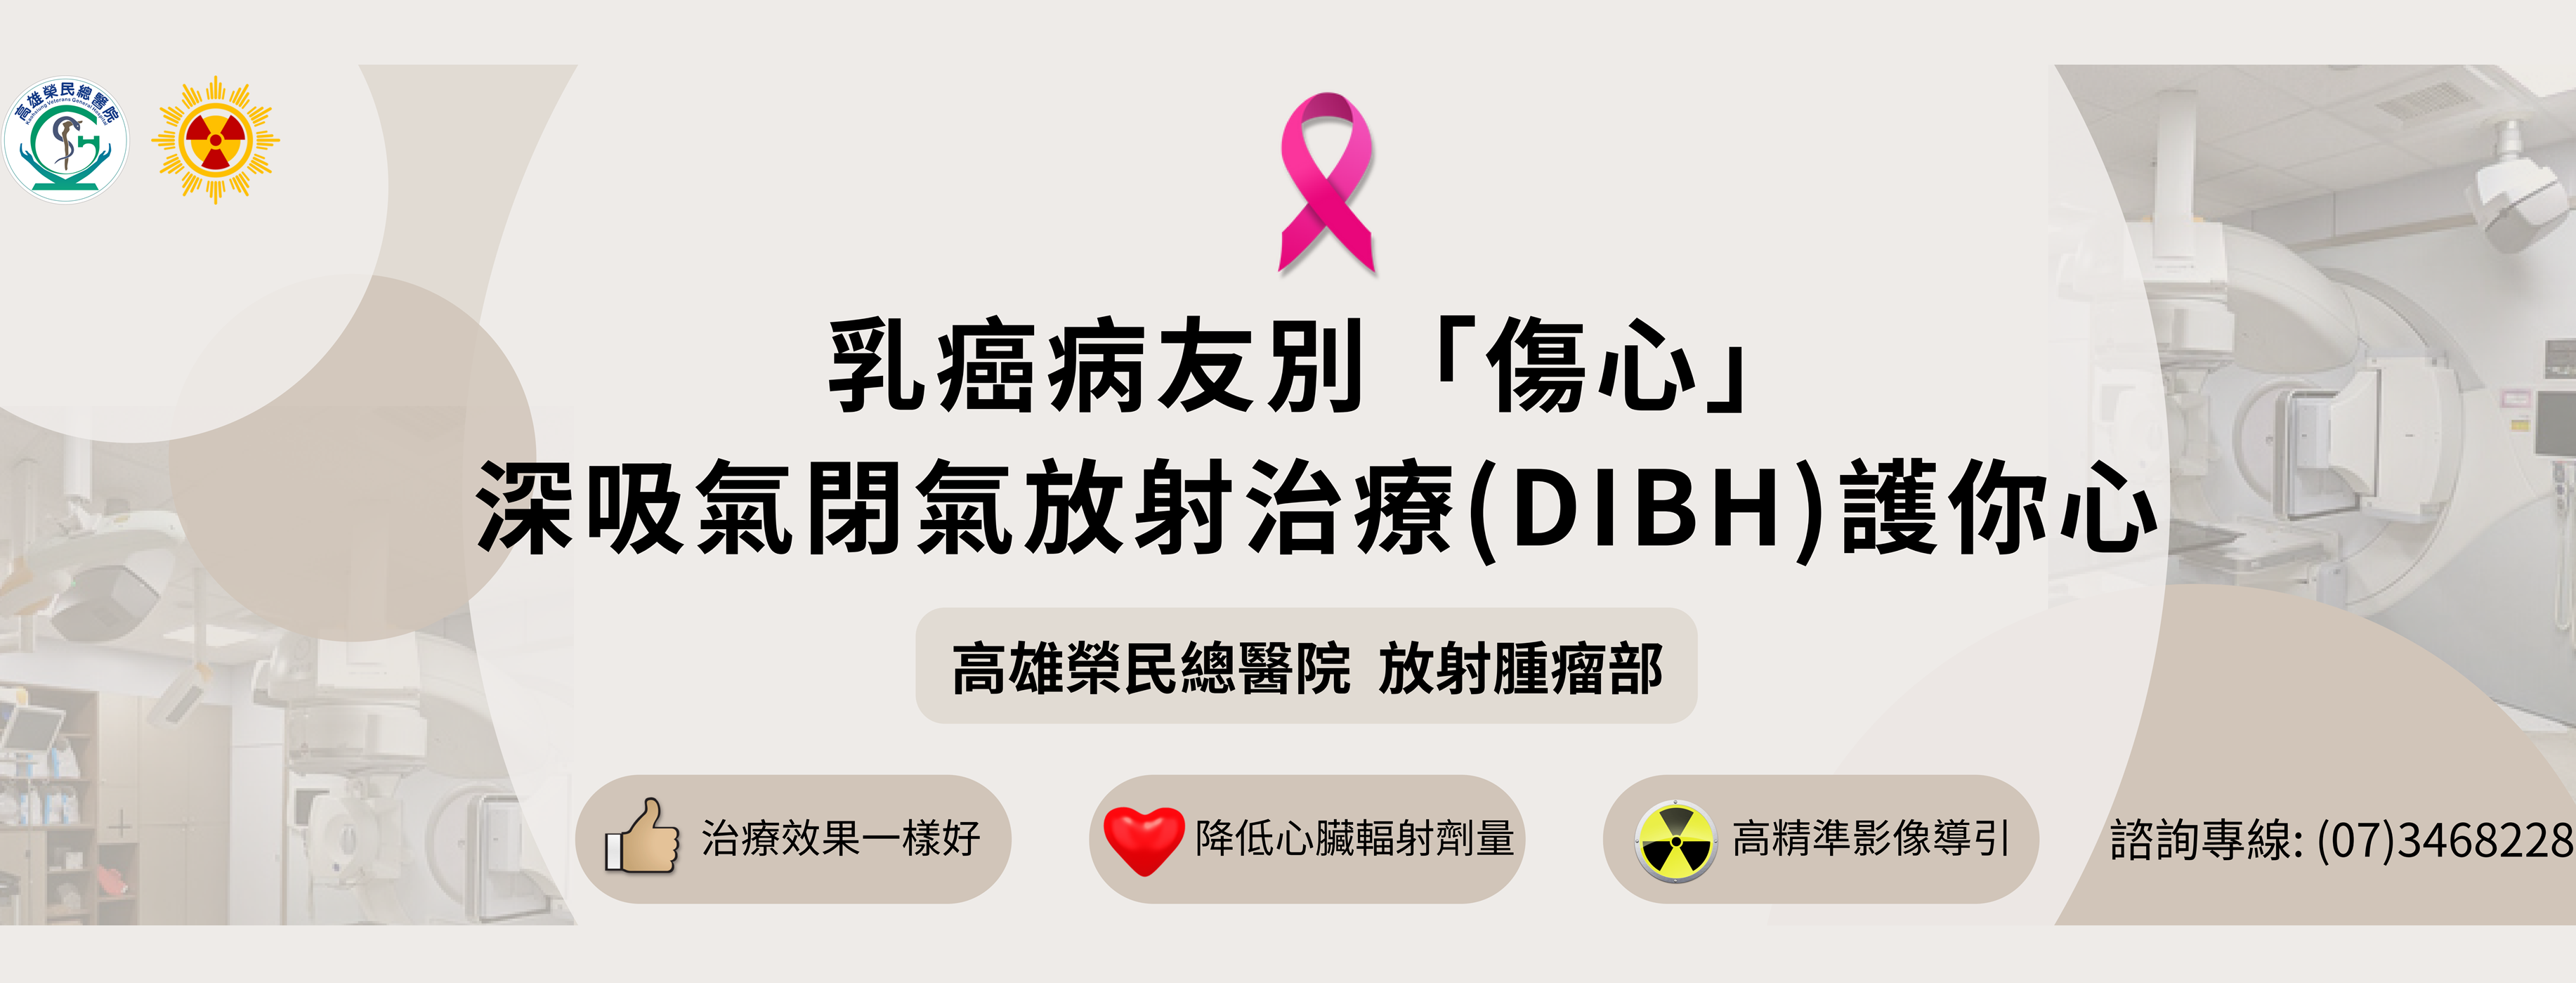 1130118「放射腫瘤部」 - 乳癌病友別「傷心」 深吸氣閉氣放射治療(DIBH)護你心(圖片)